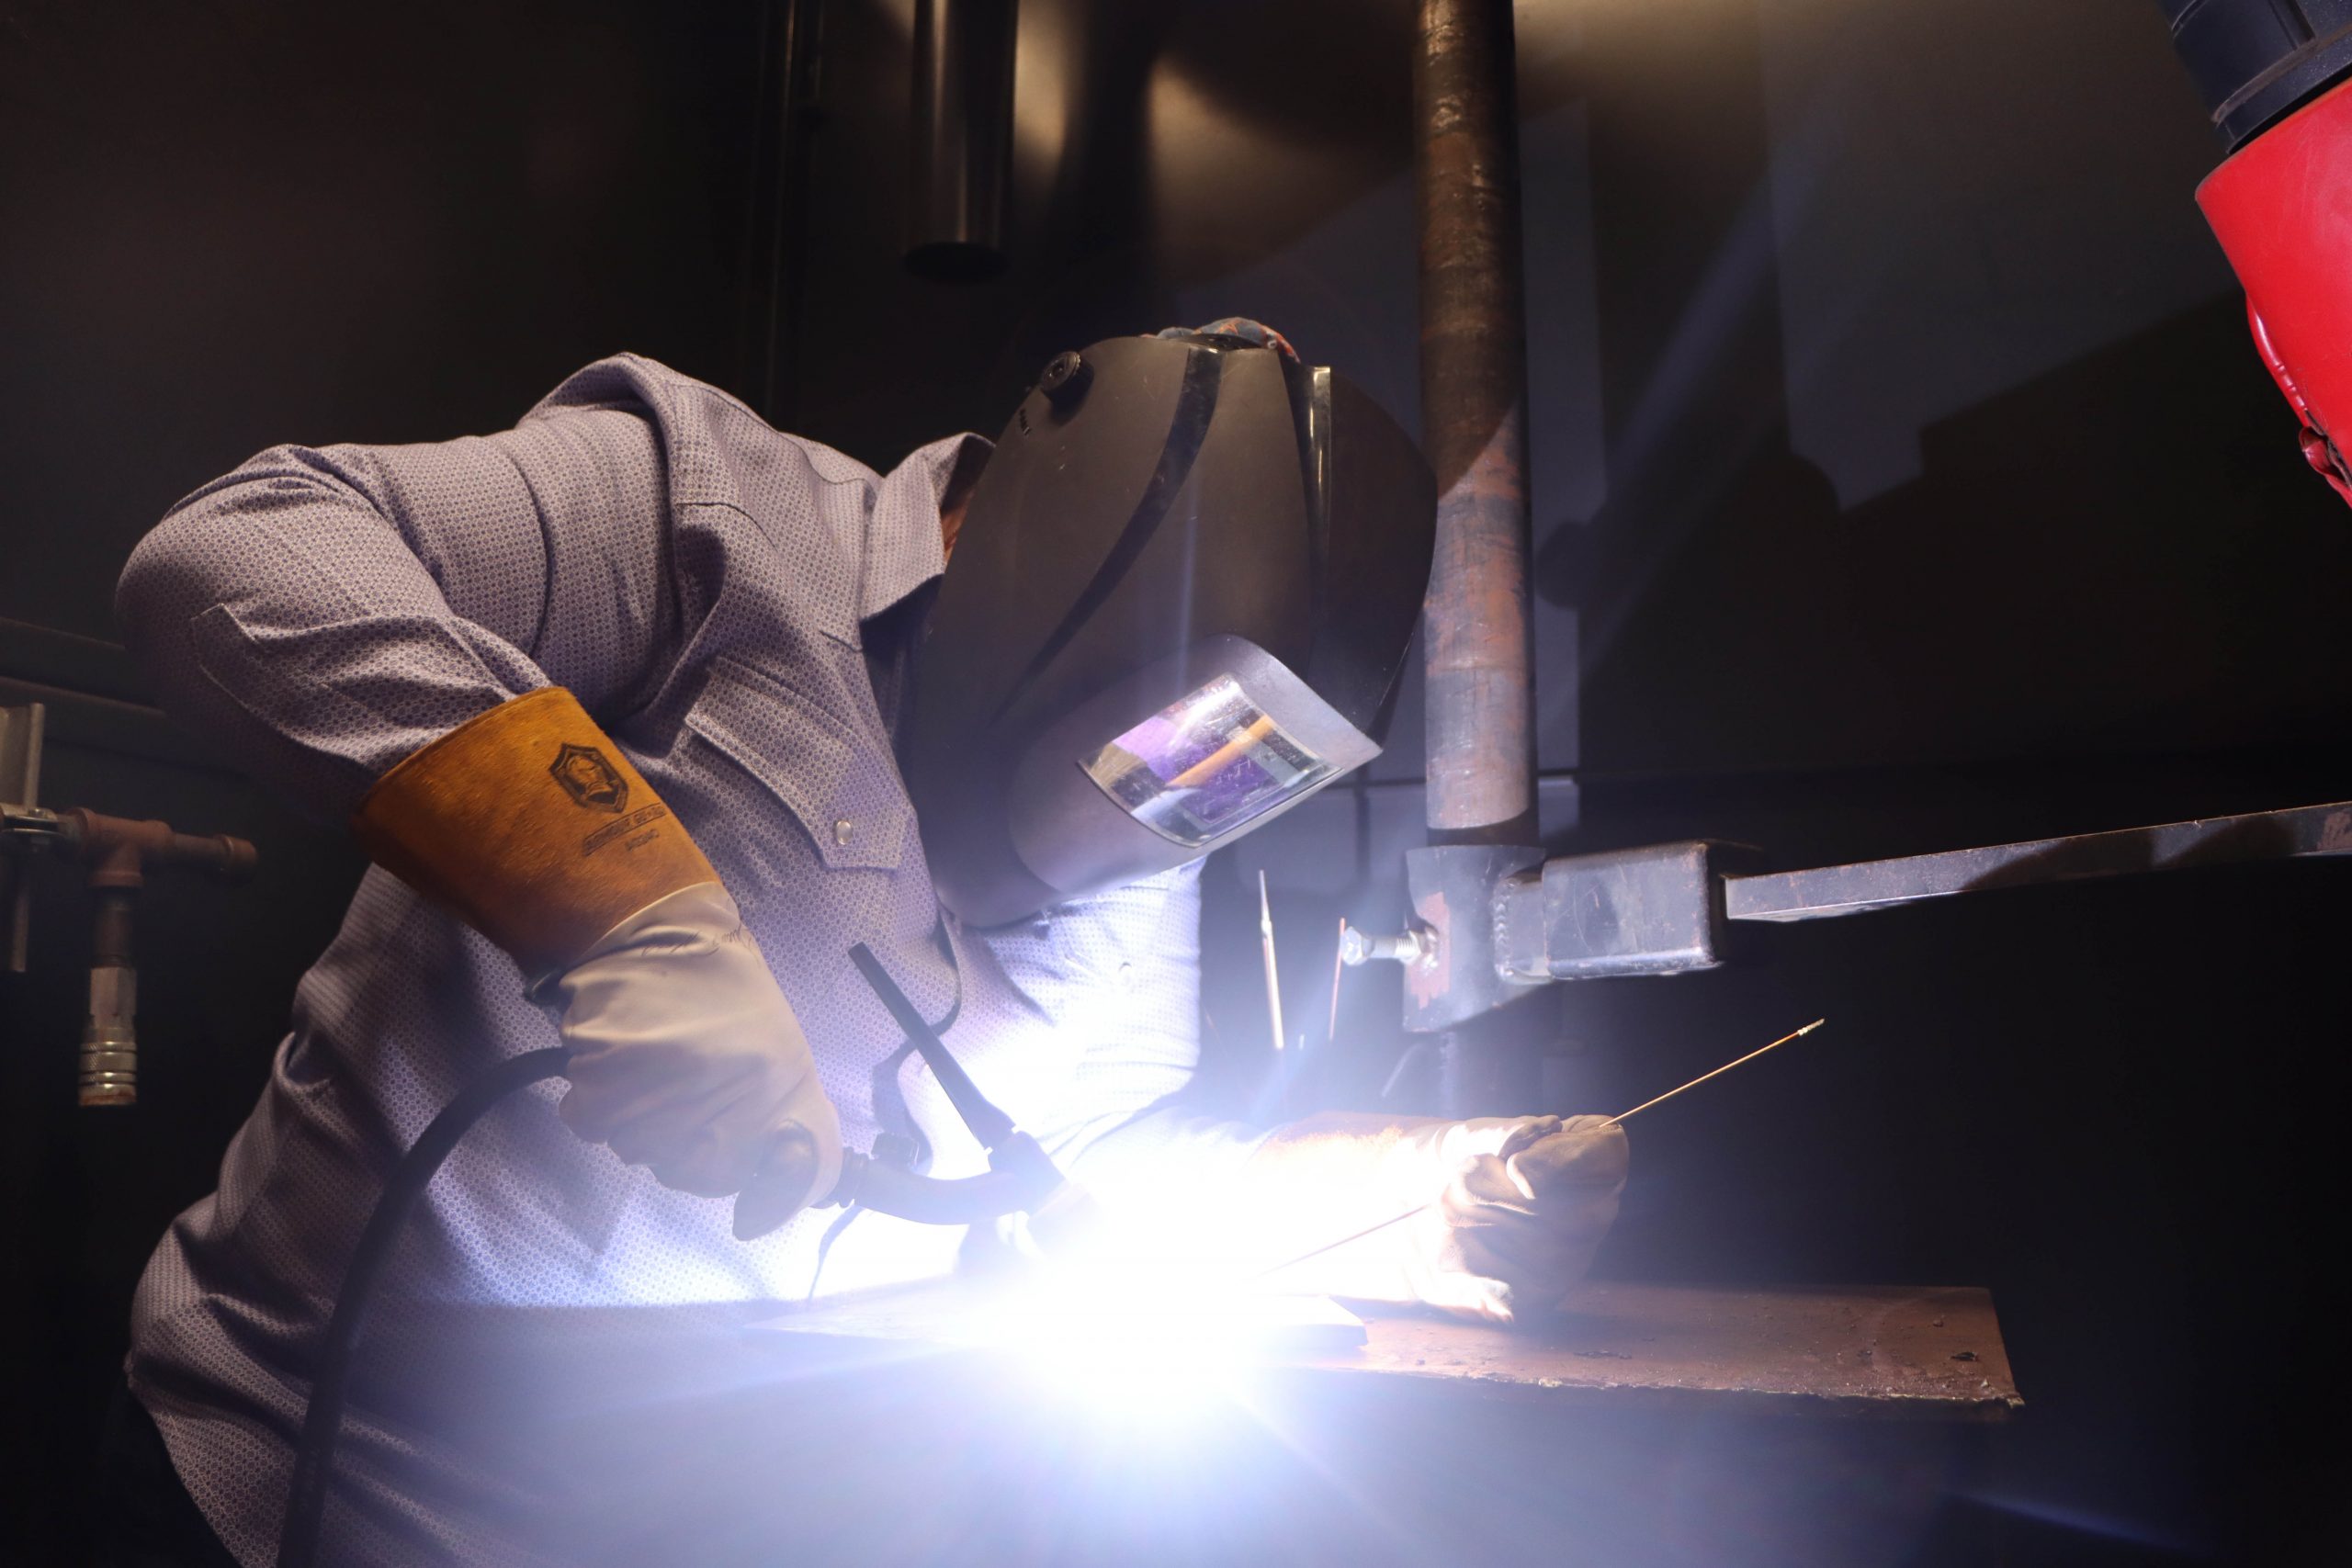 Student spotlight: Female welder breaks generational curse